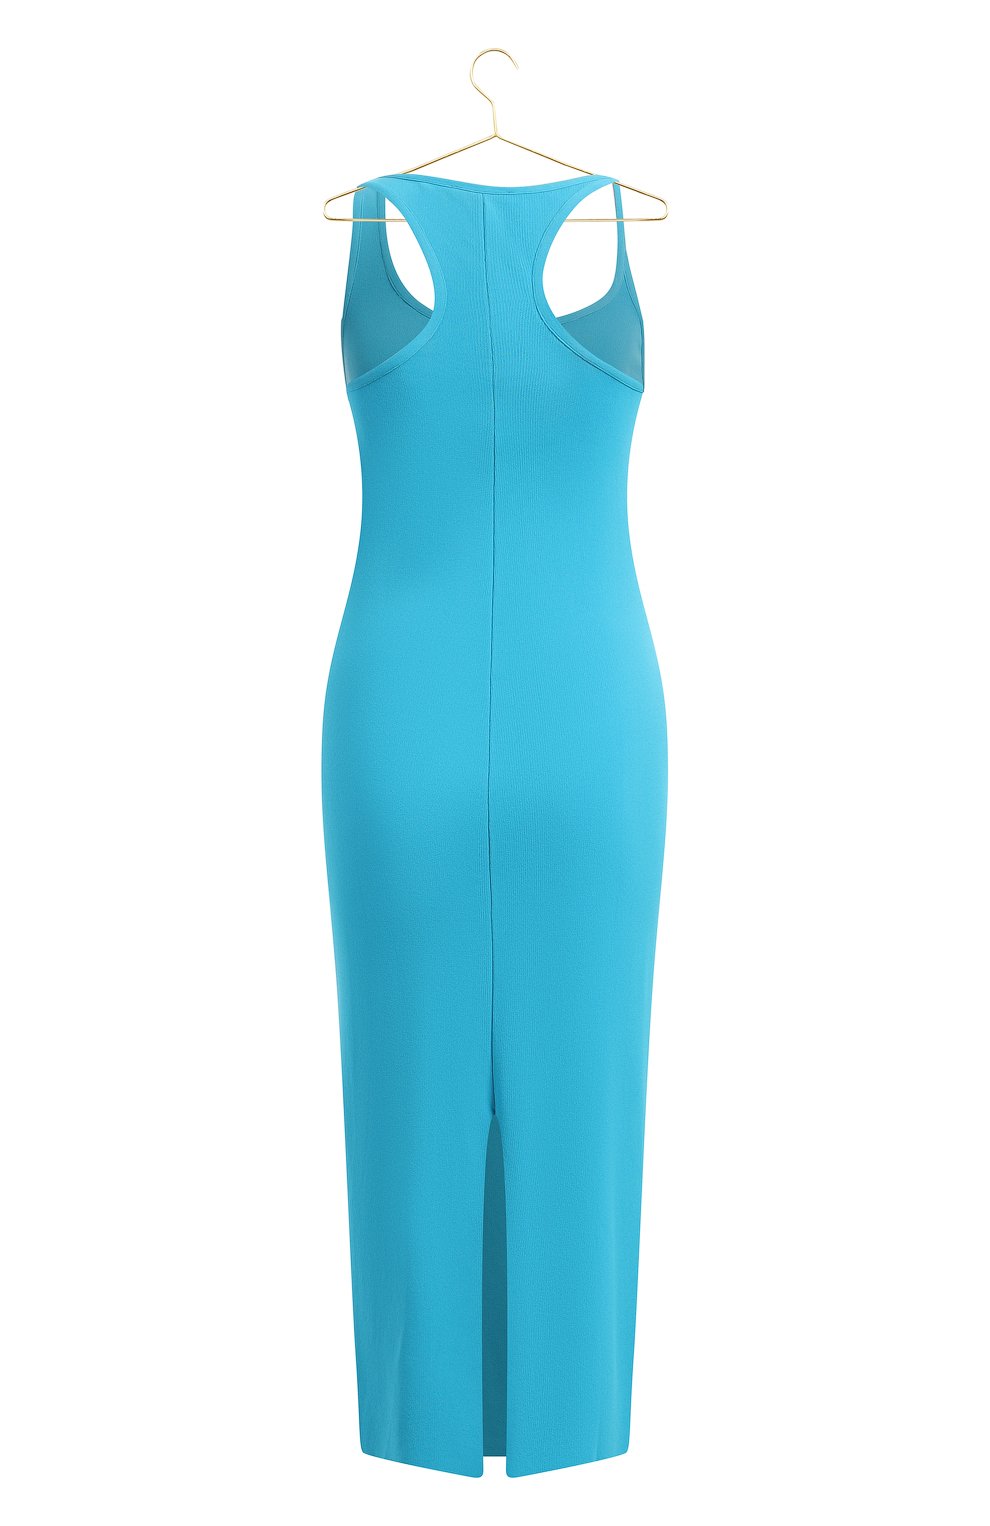 Платье из вискозы | MRZ | Голубой - 2